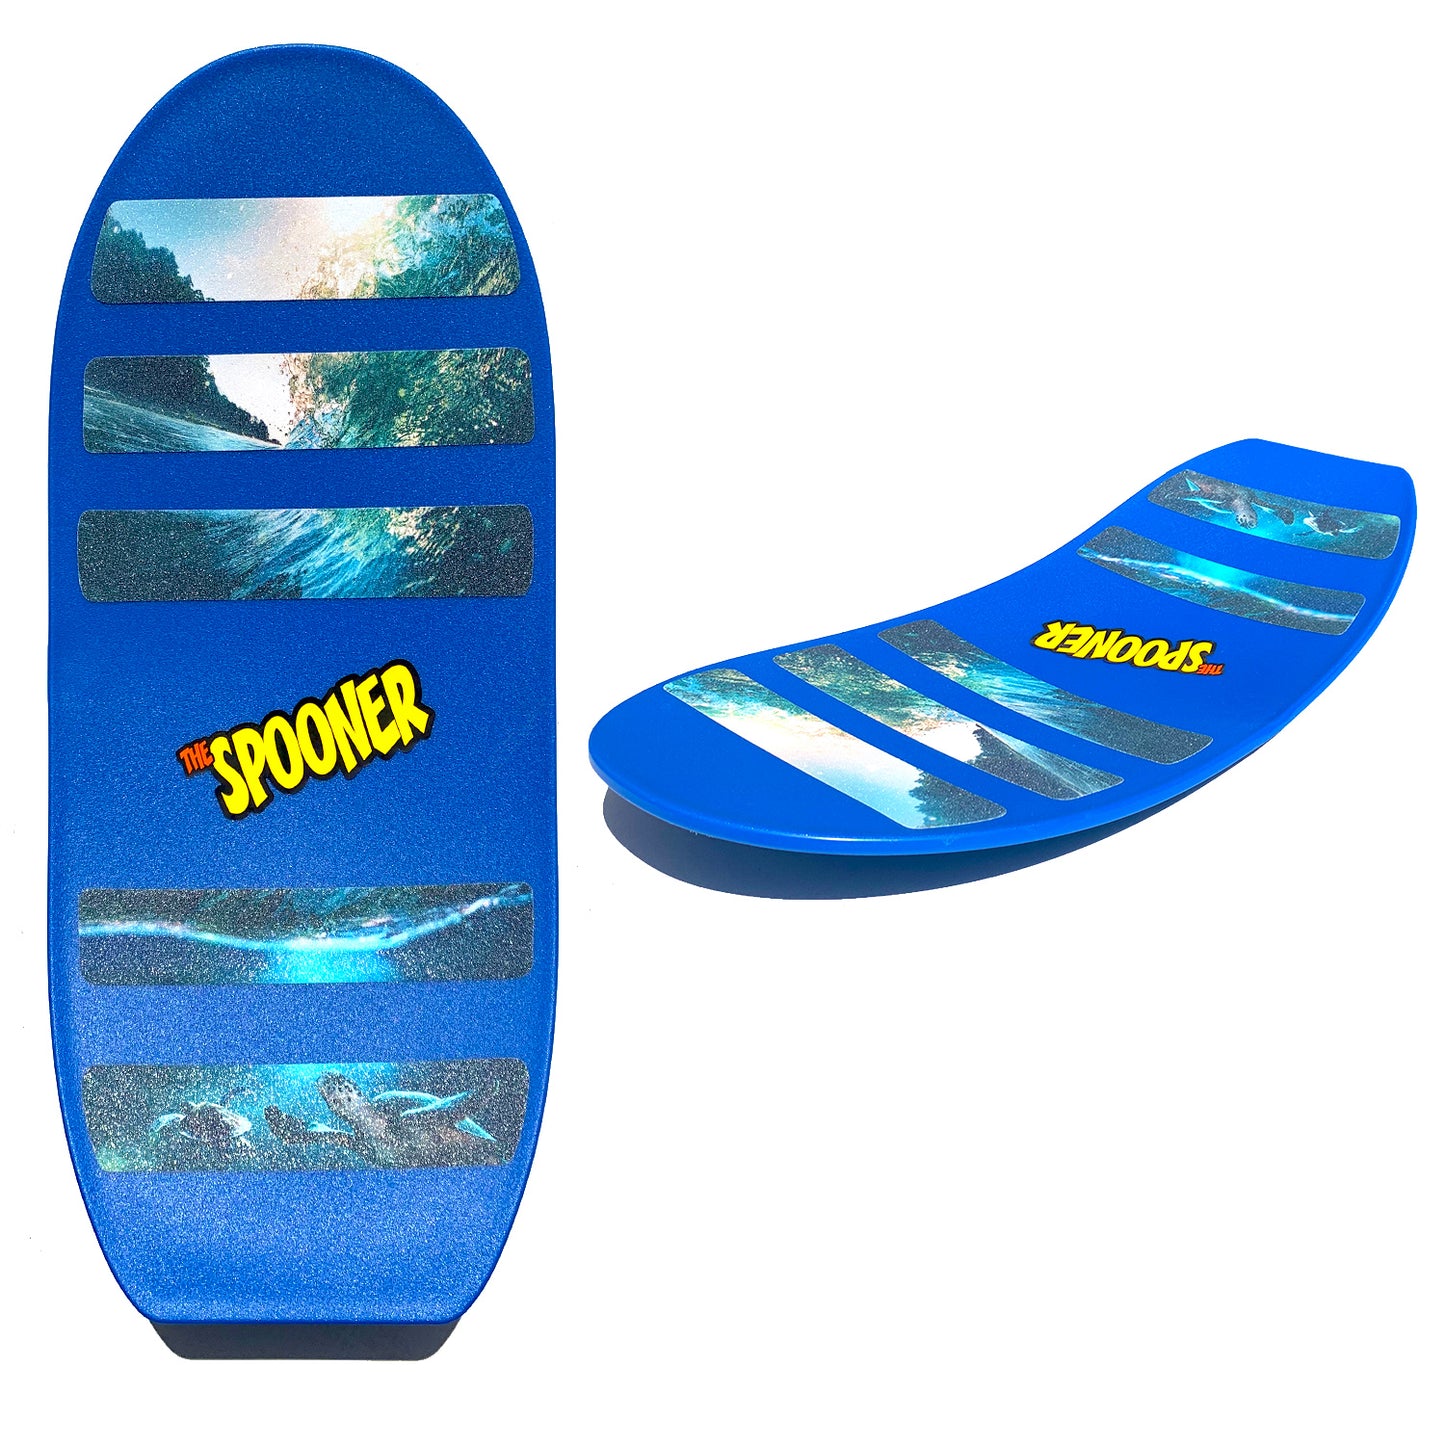 Blue Pro Spooner Board